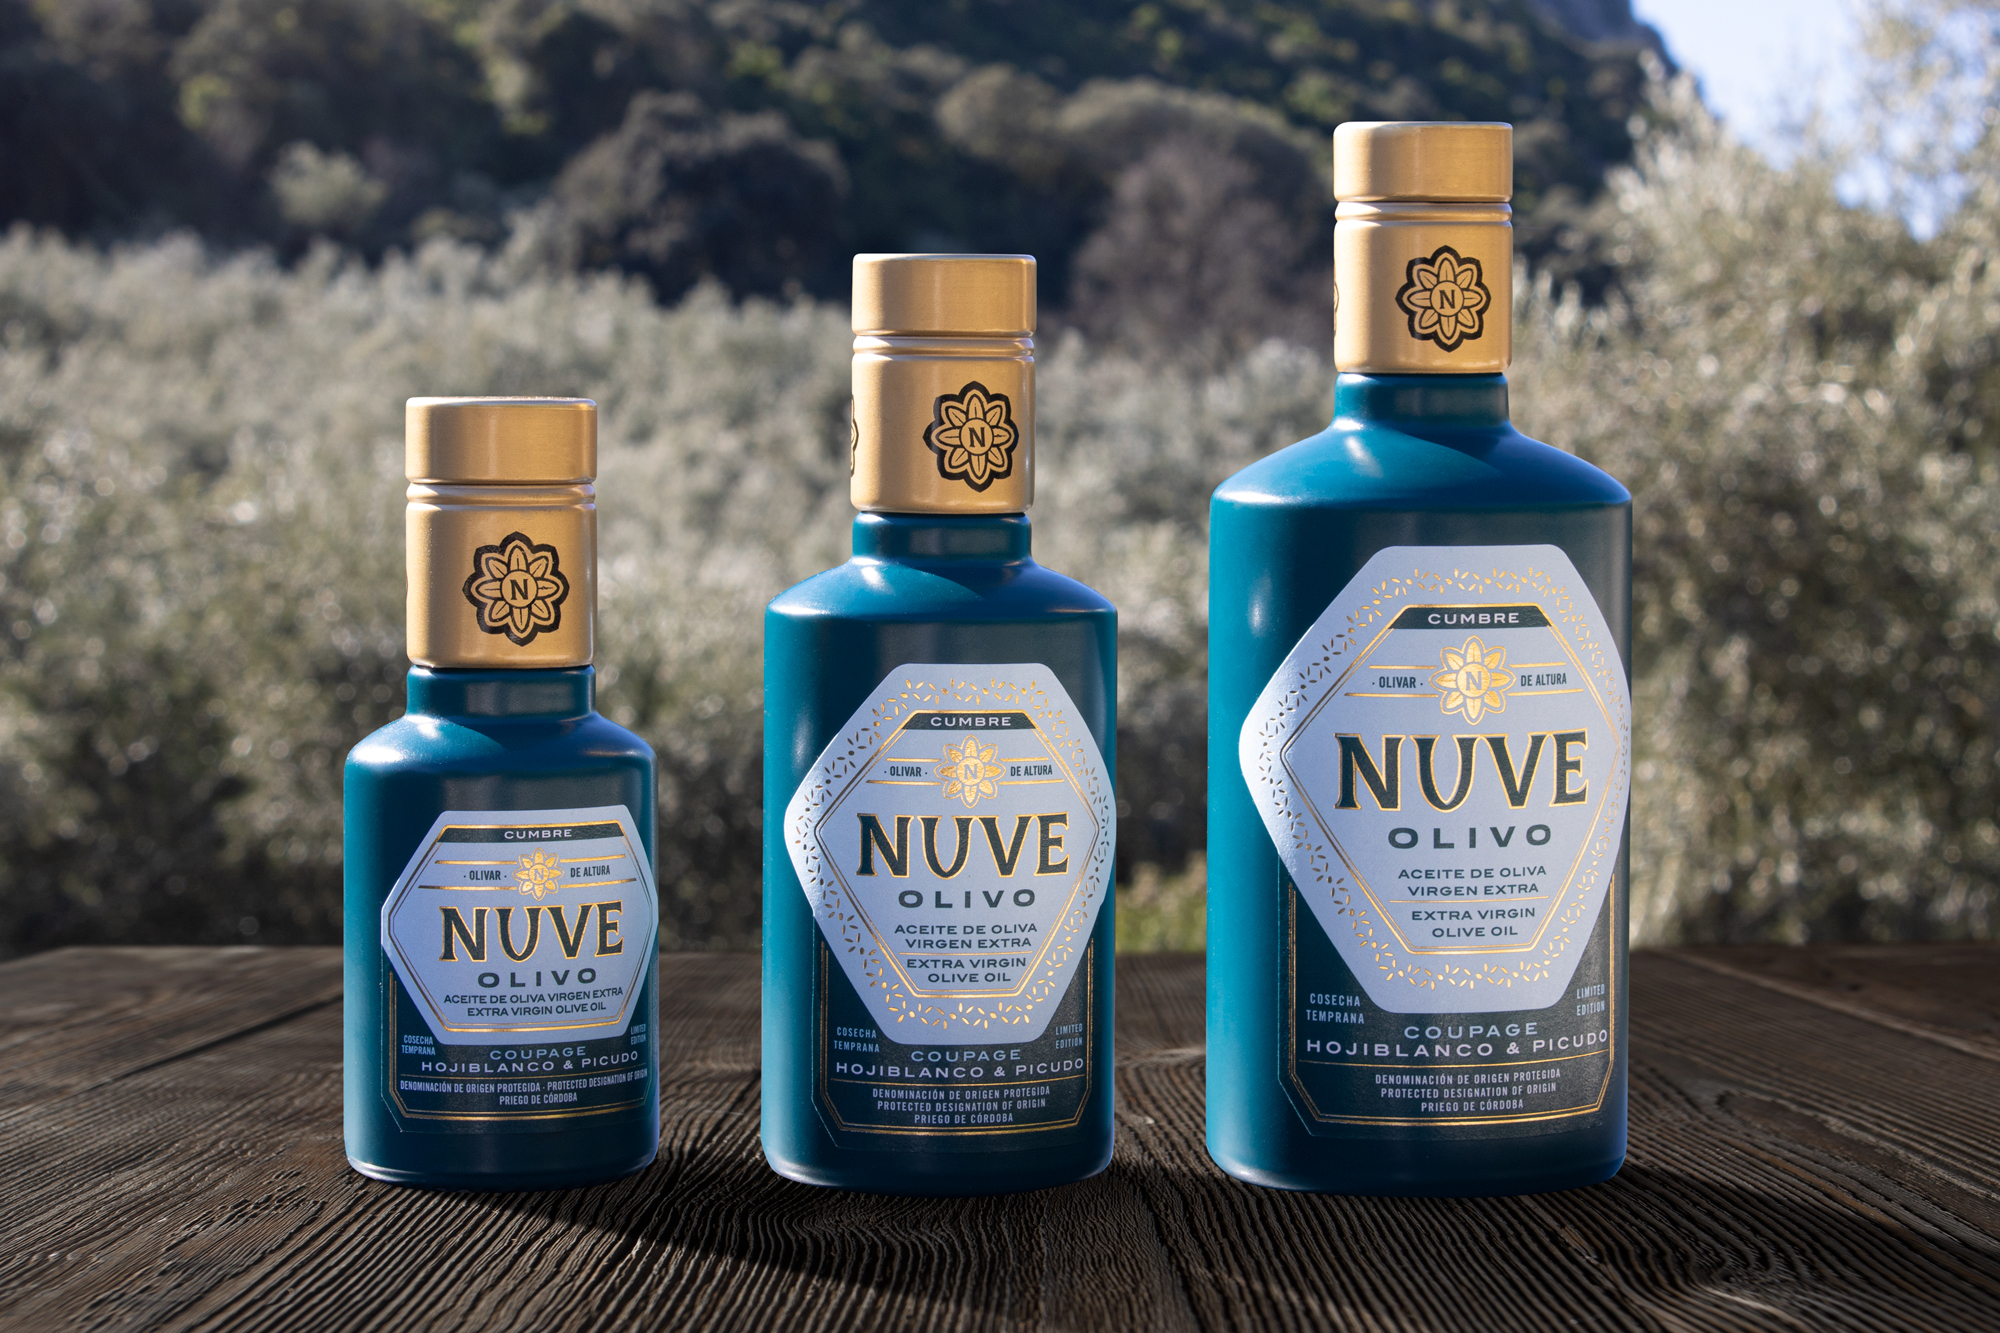 Nuve-olivo-diseño-de-etiqueta-aceite-oliva